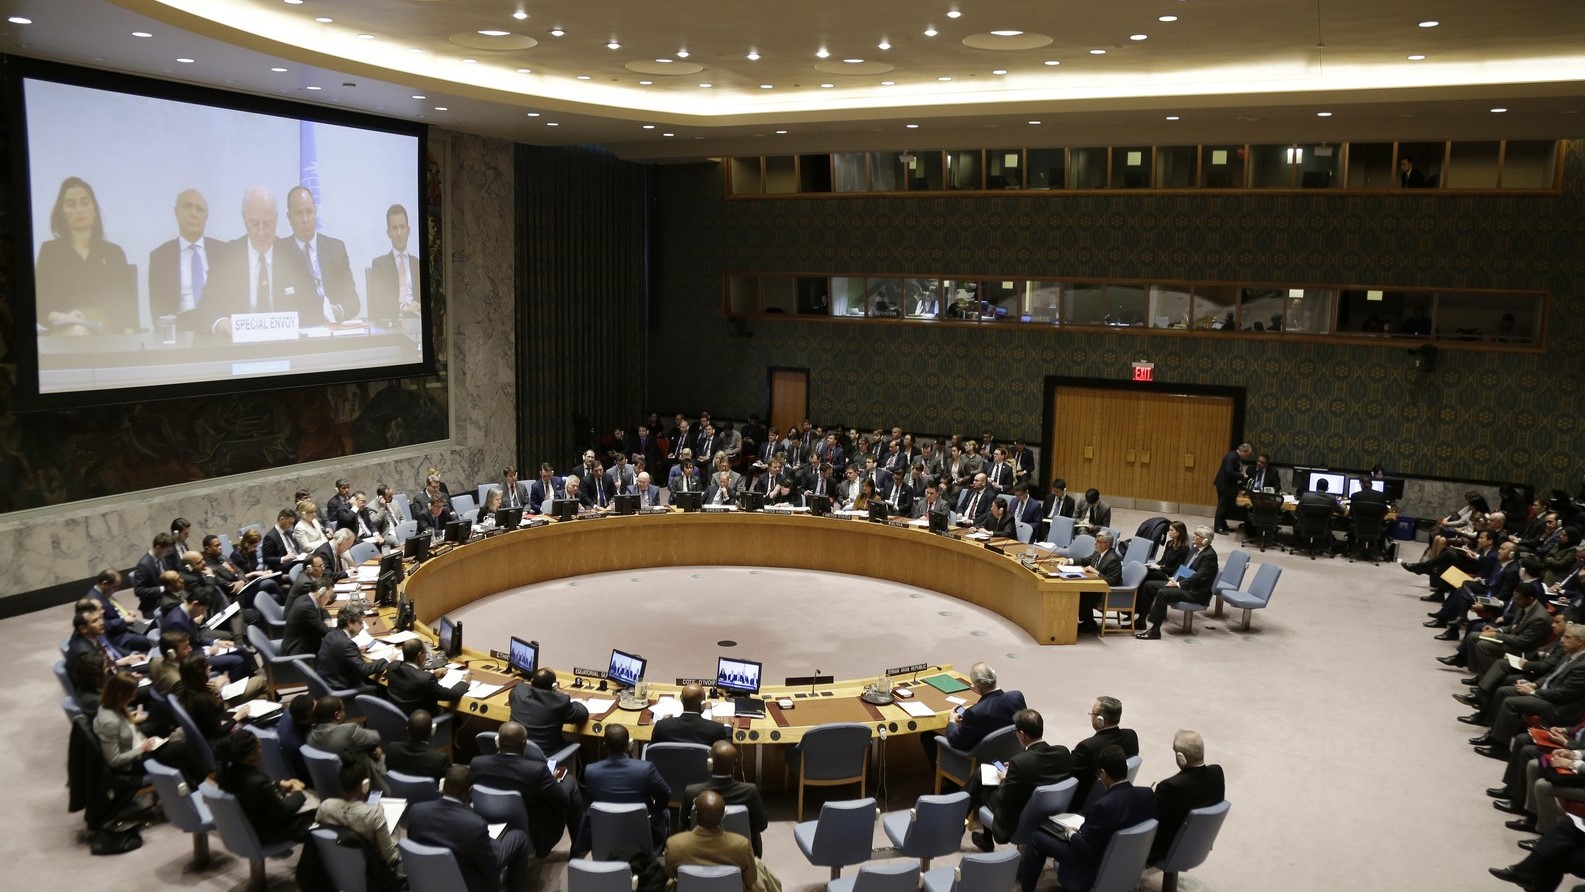 EUA pedem reunião do Conselho de Segurança da ONU sobre a Venezuela